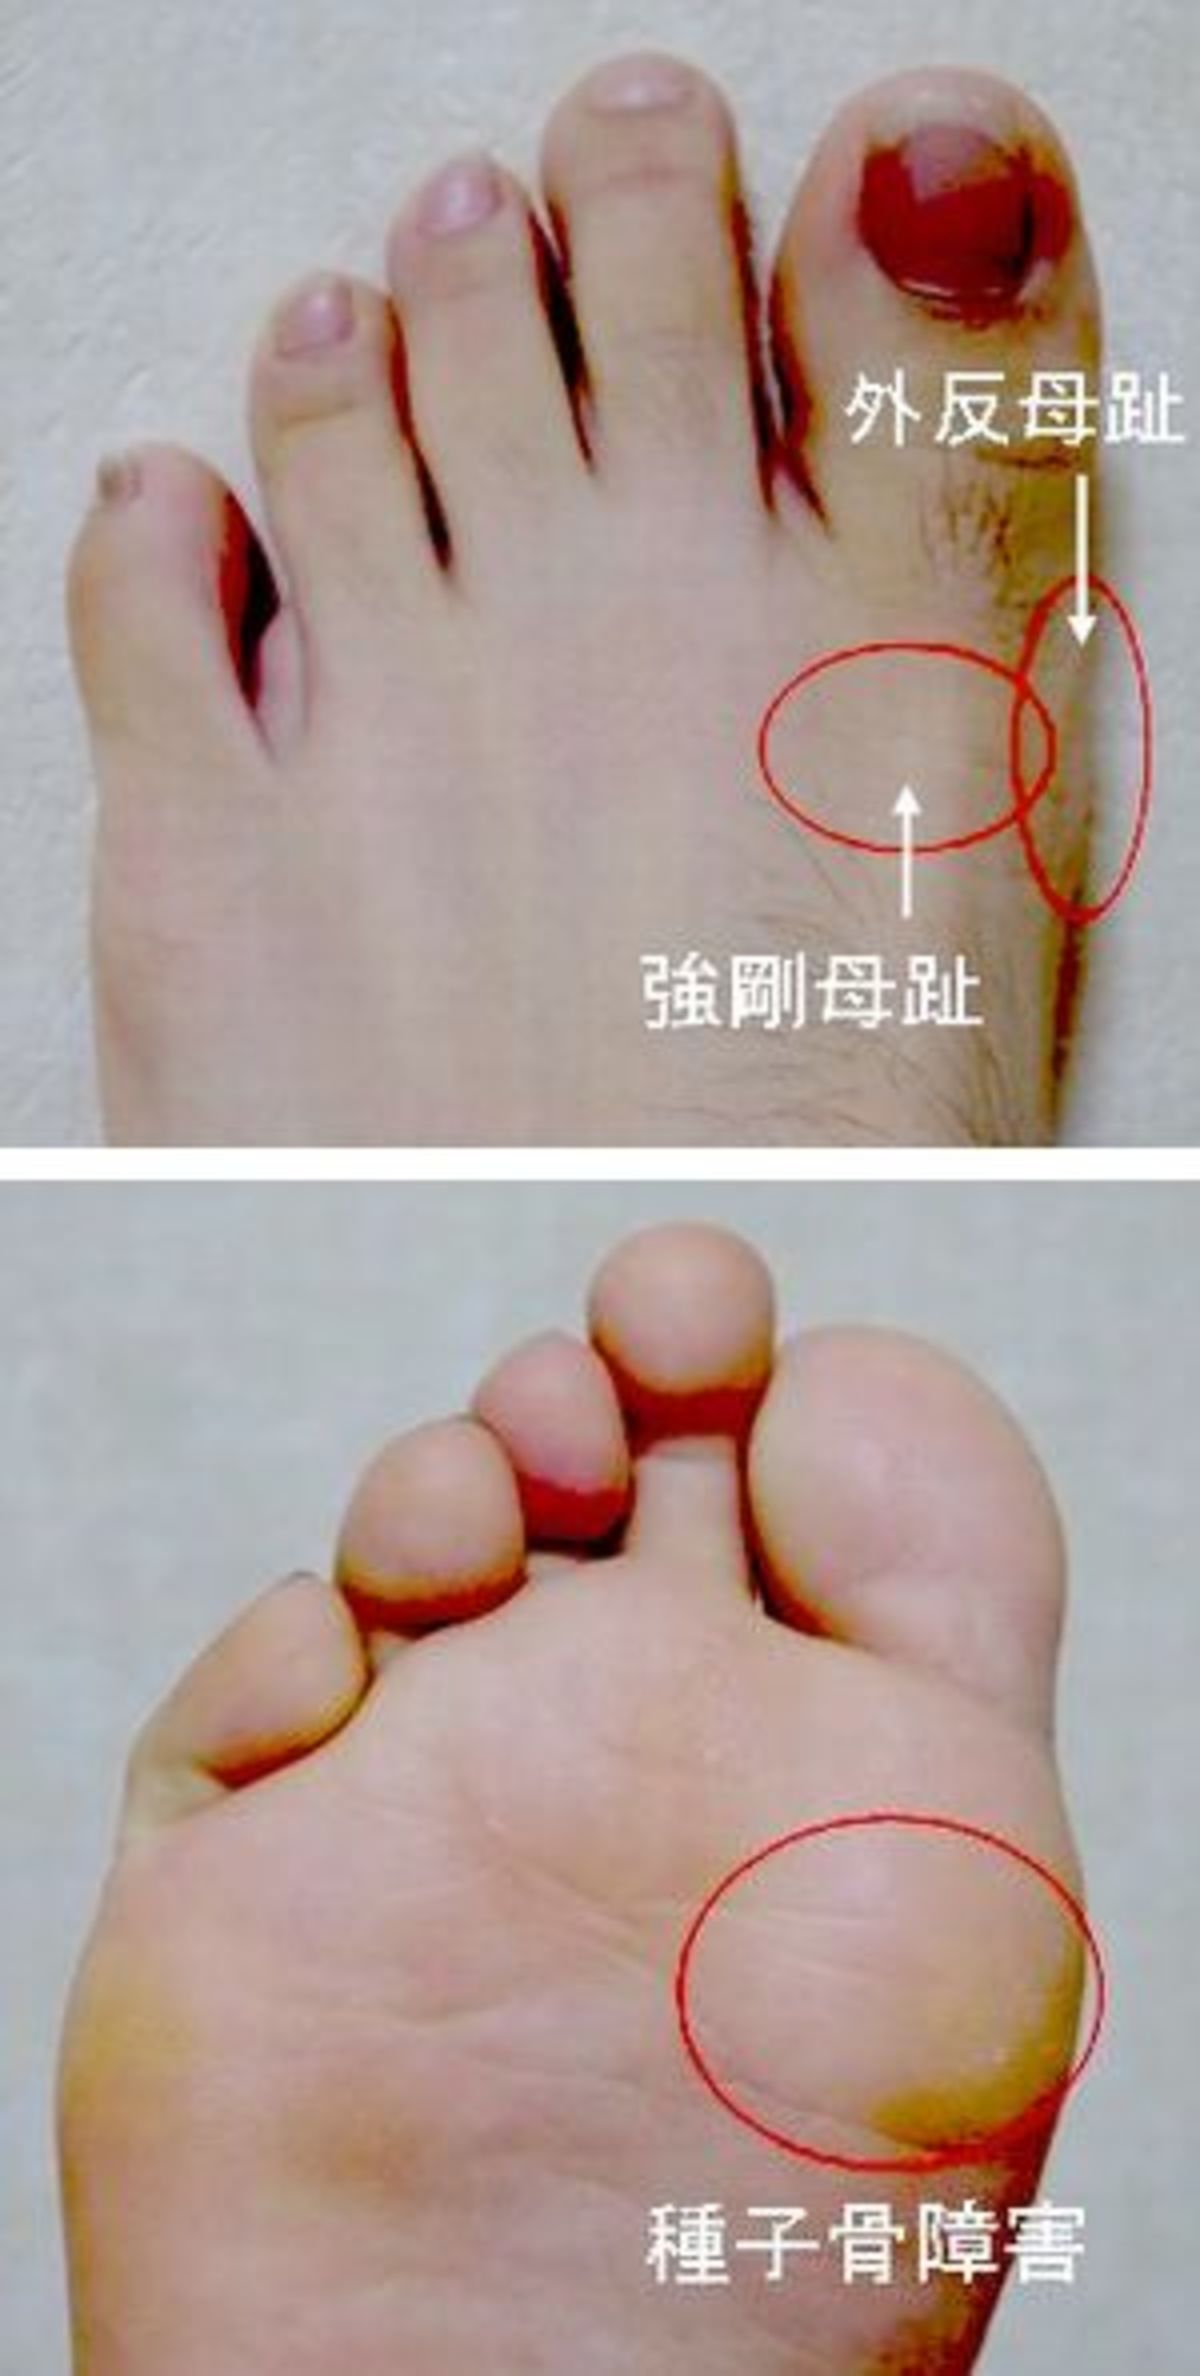 足のトラブル 健康相談 徳島新聞電子版